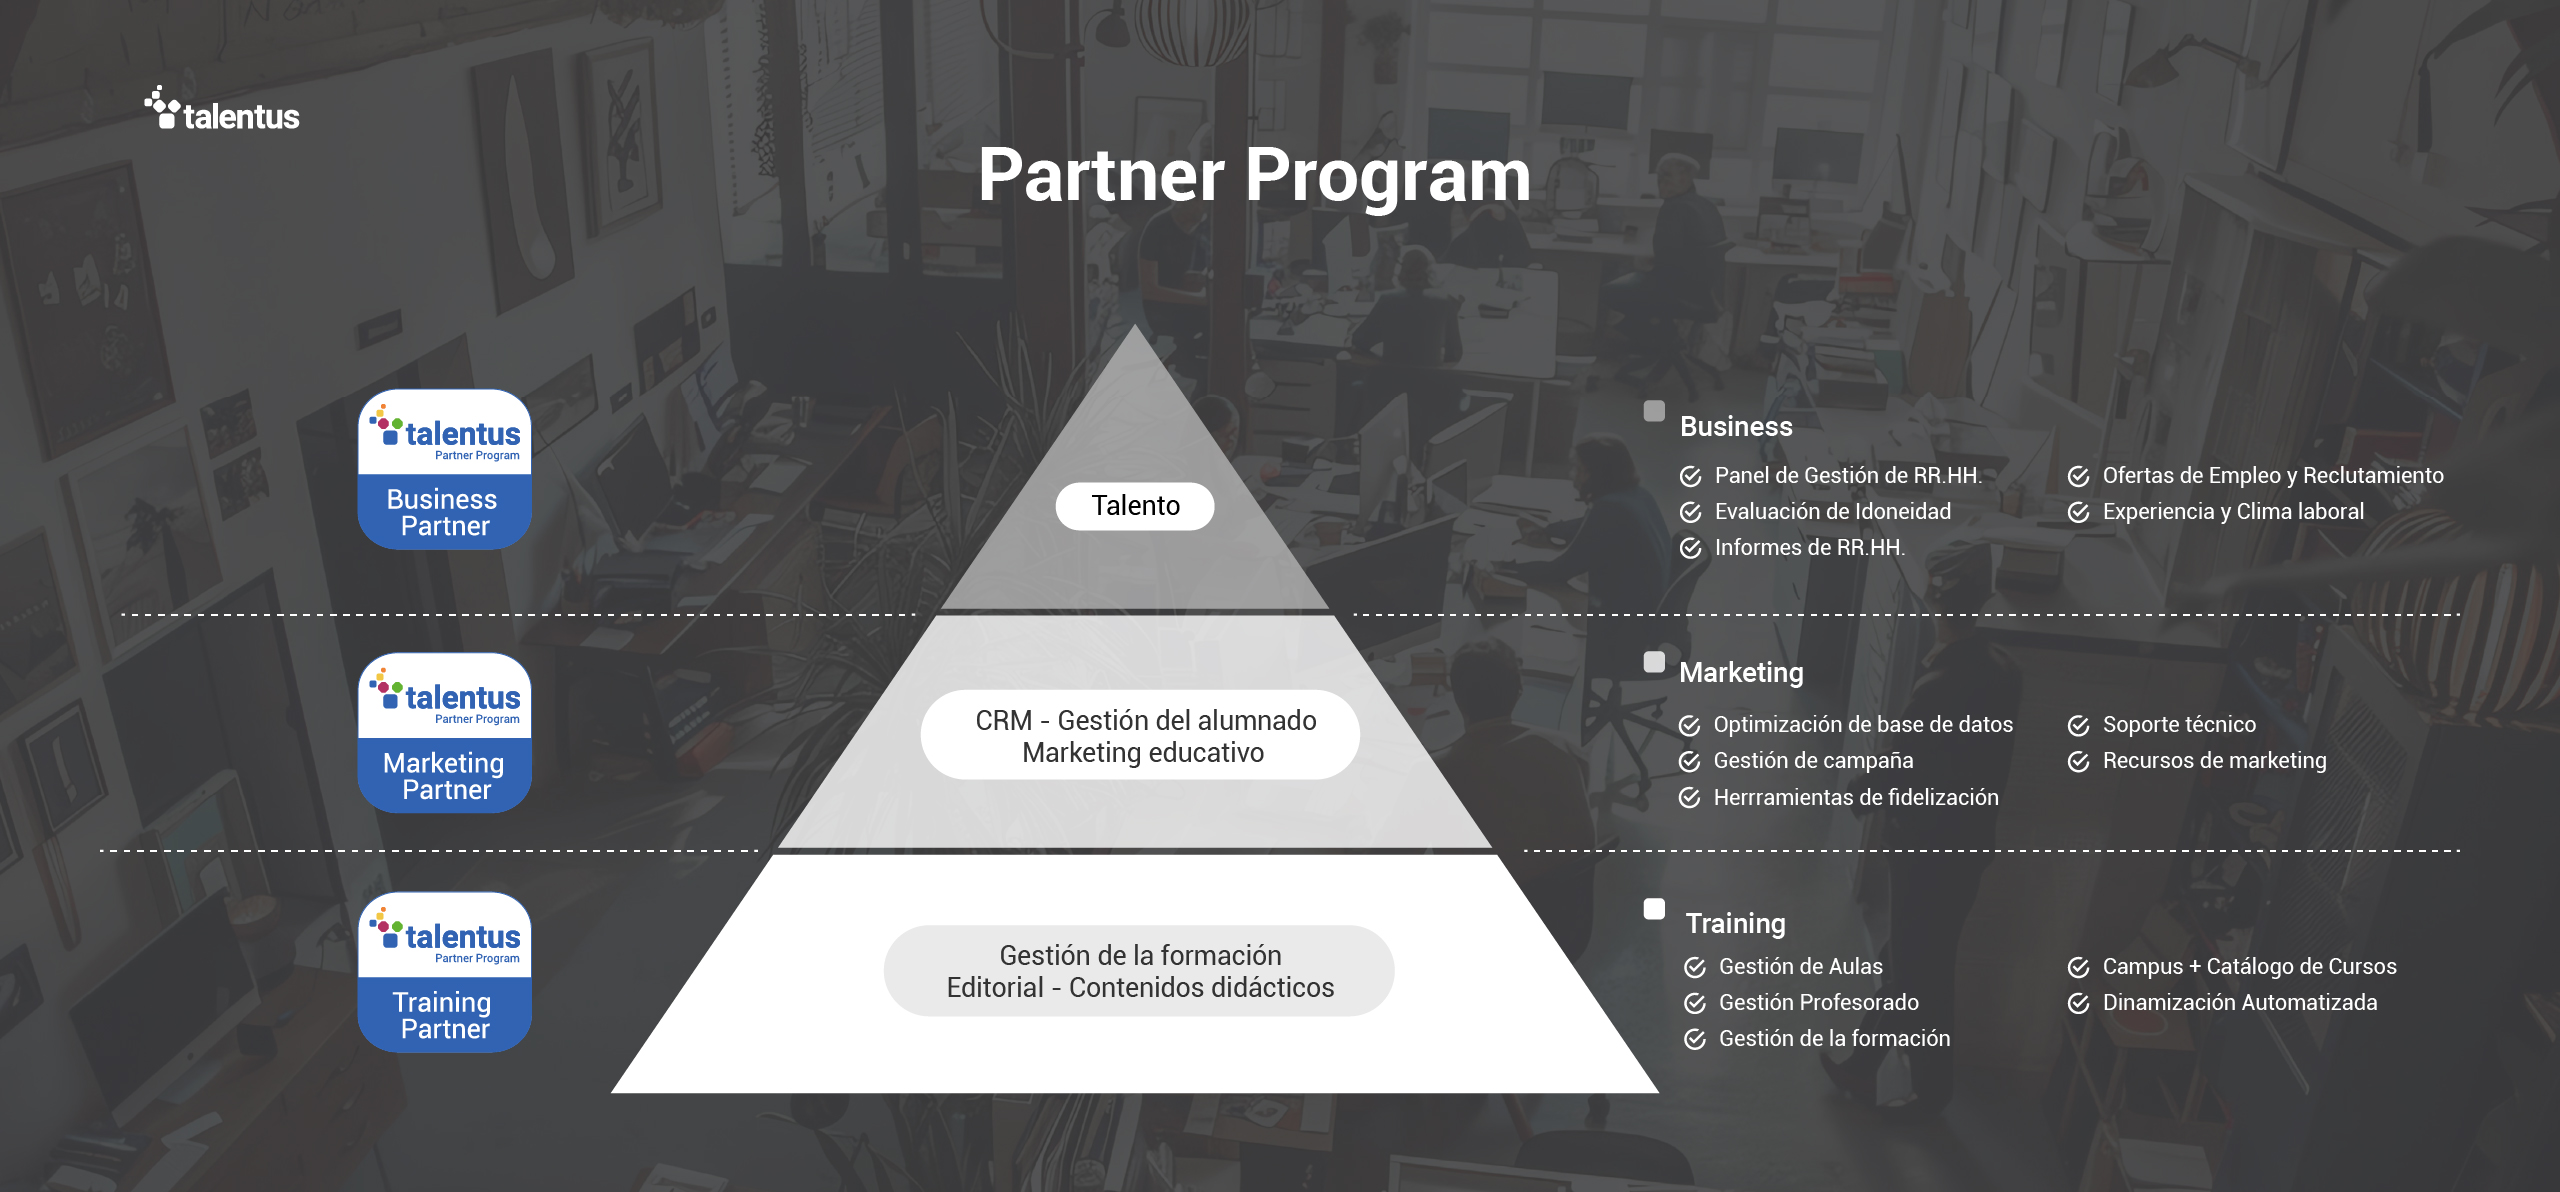 Piramide Certificados Partner